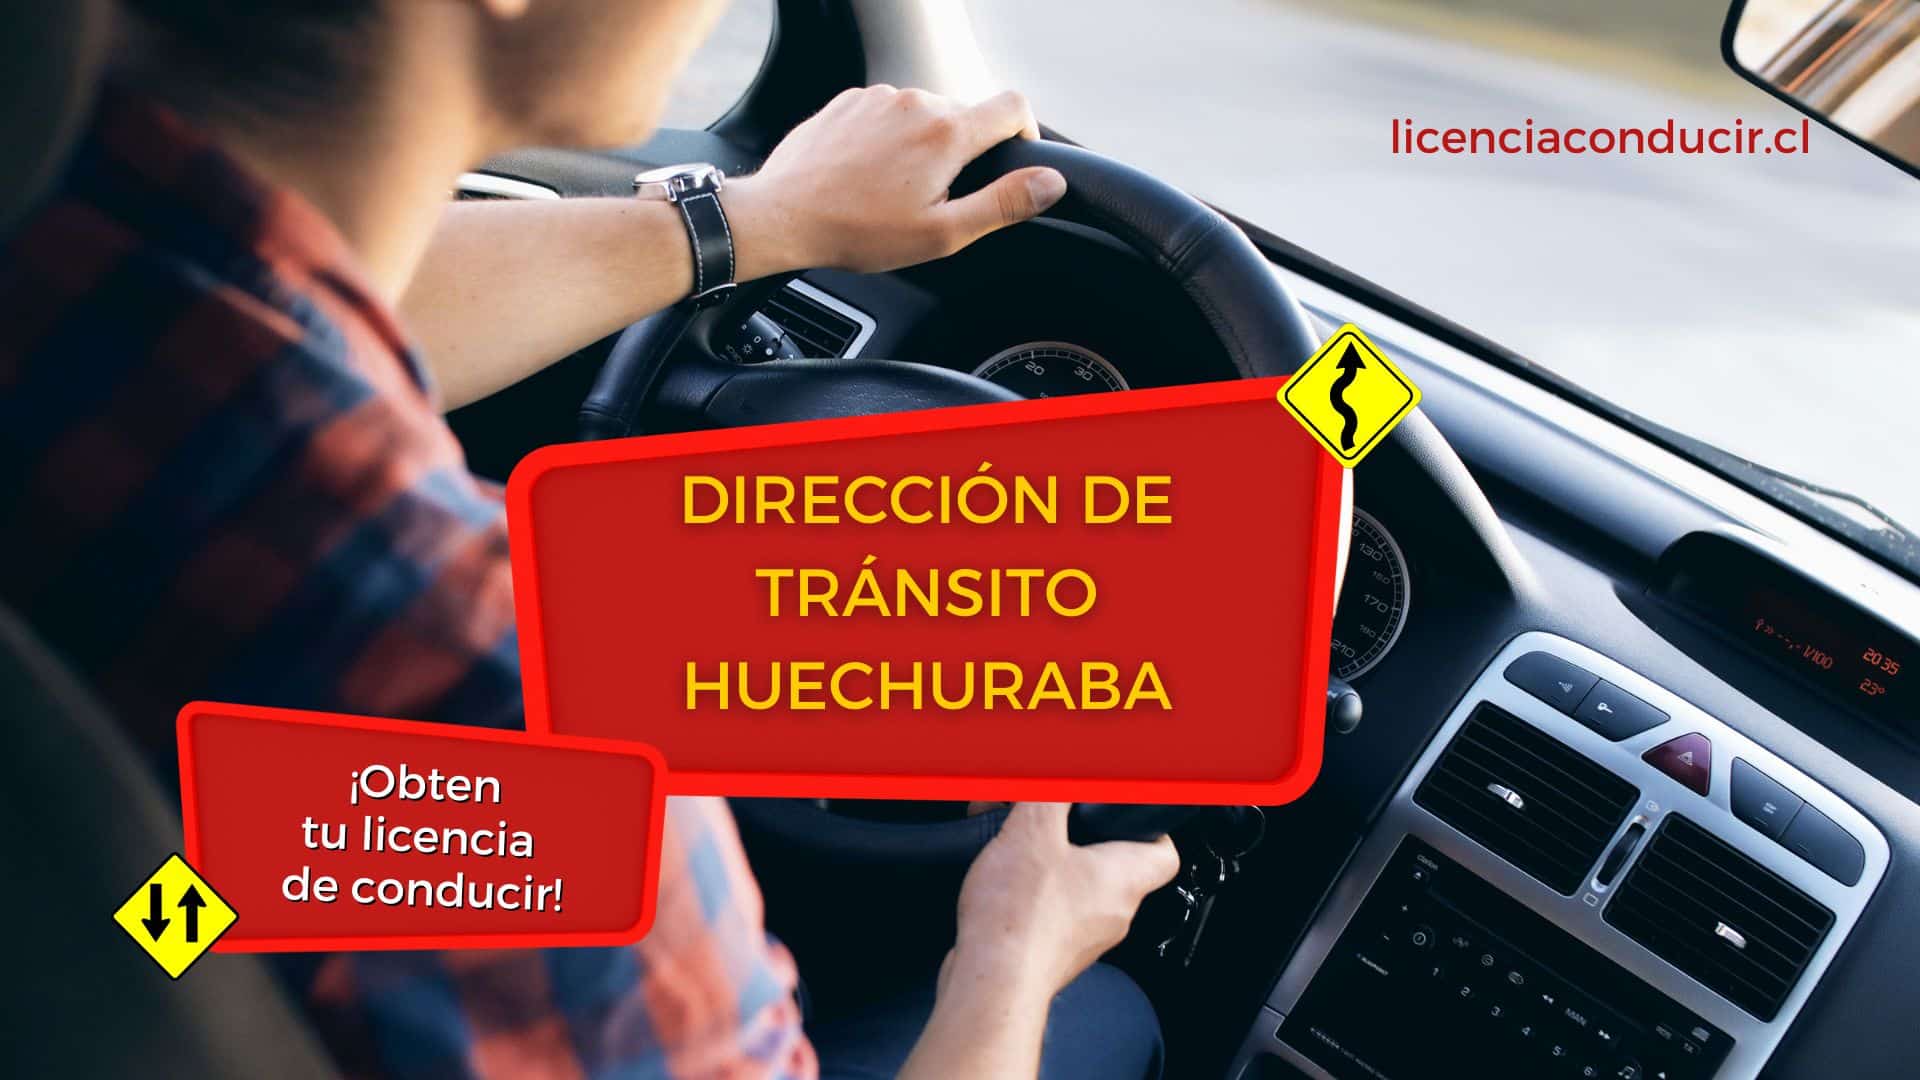 Renovar licencia conducir en huechuraba